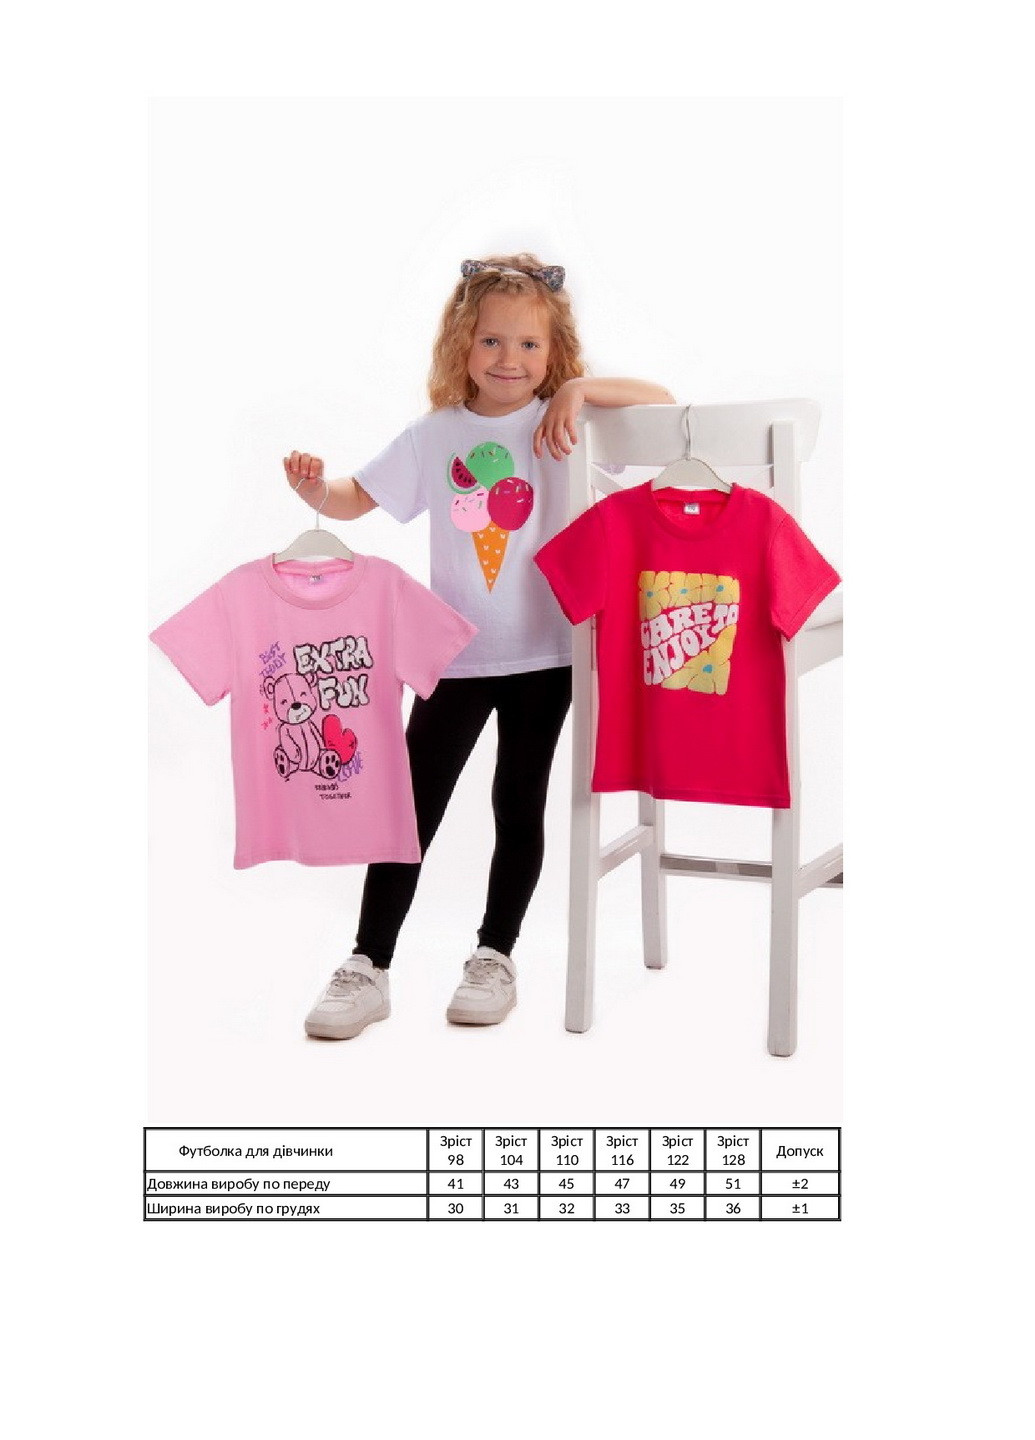 Комбинированная летняя комплект для девочек из 3-х футболок KINDER MODE